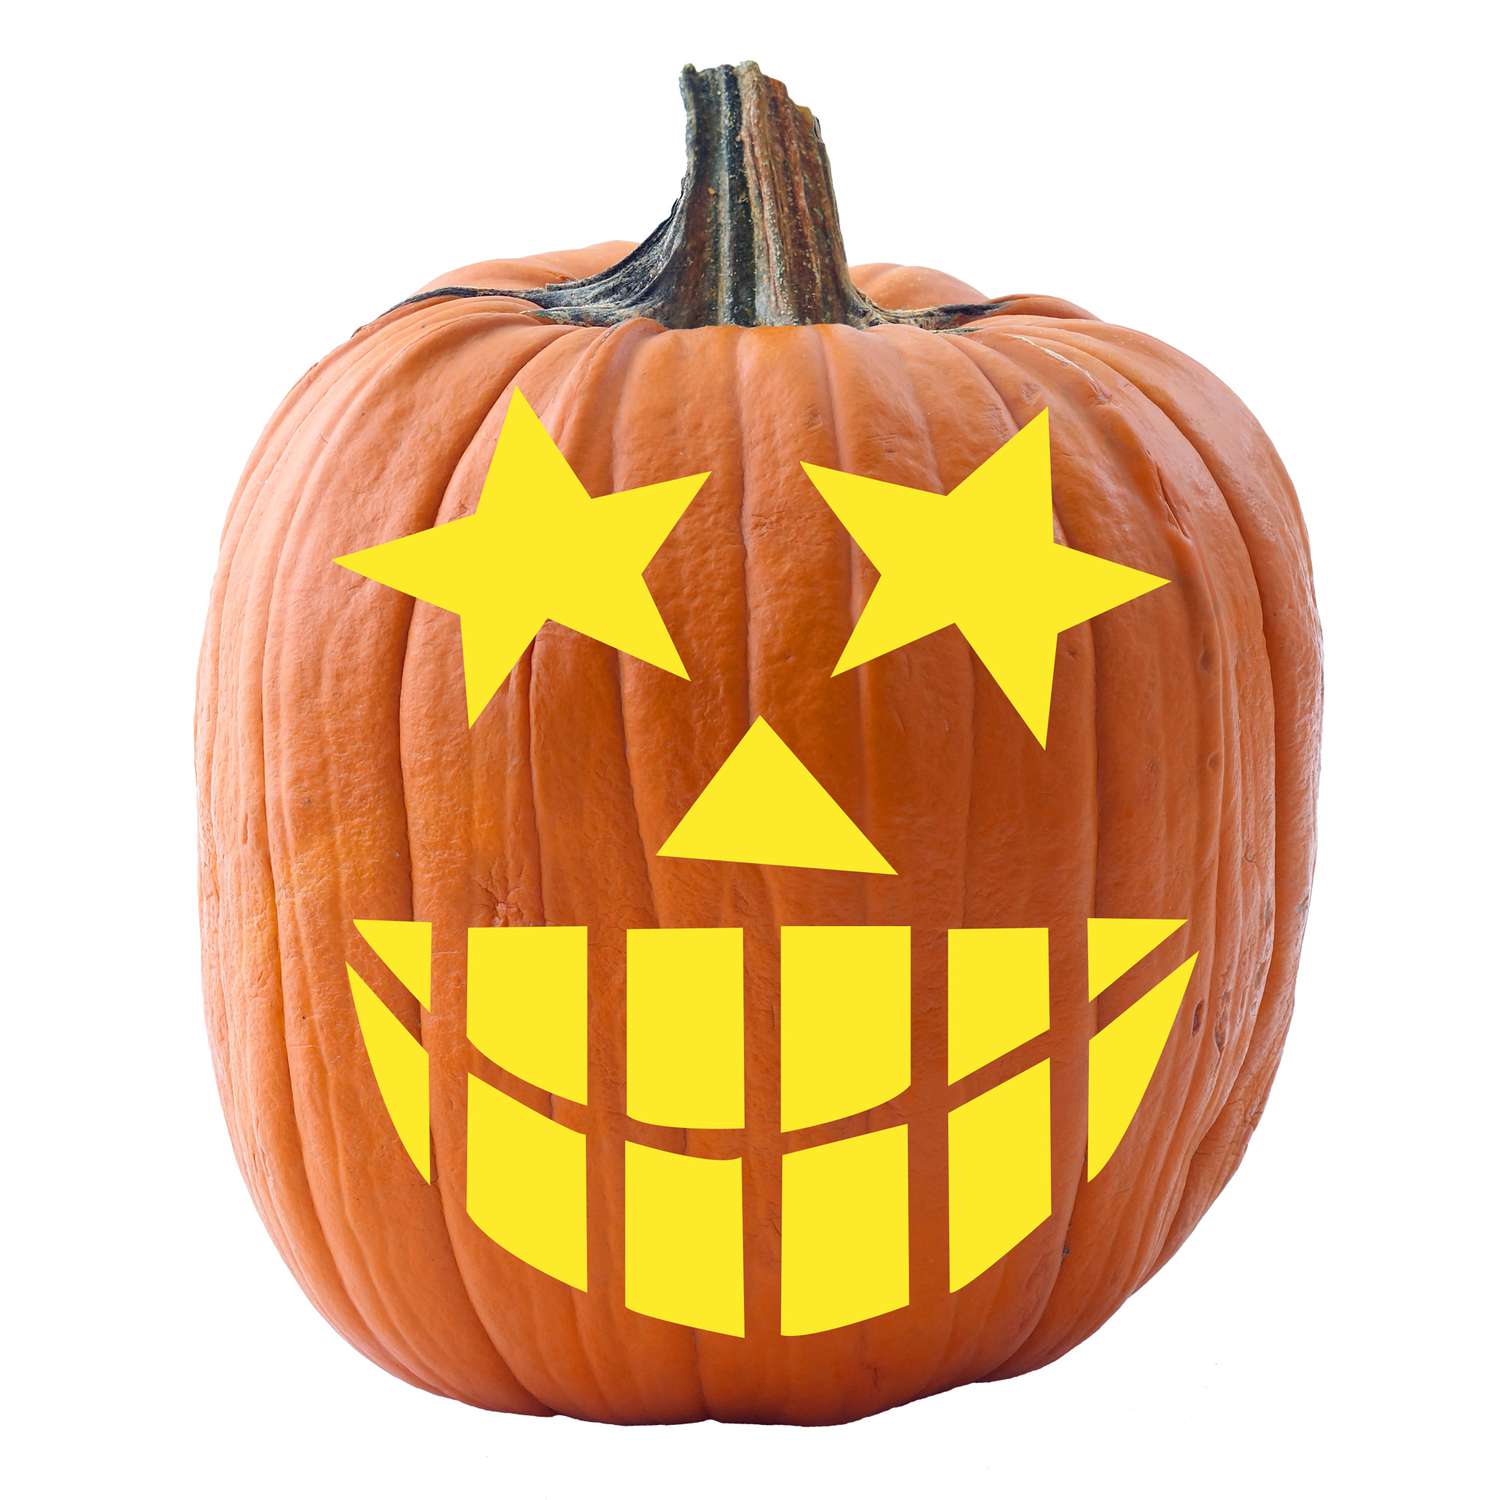 pumpkin with Starry-Eyed stencil